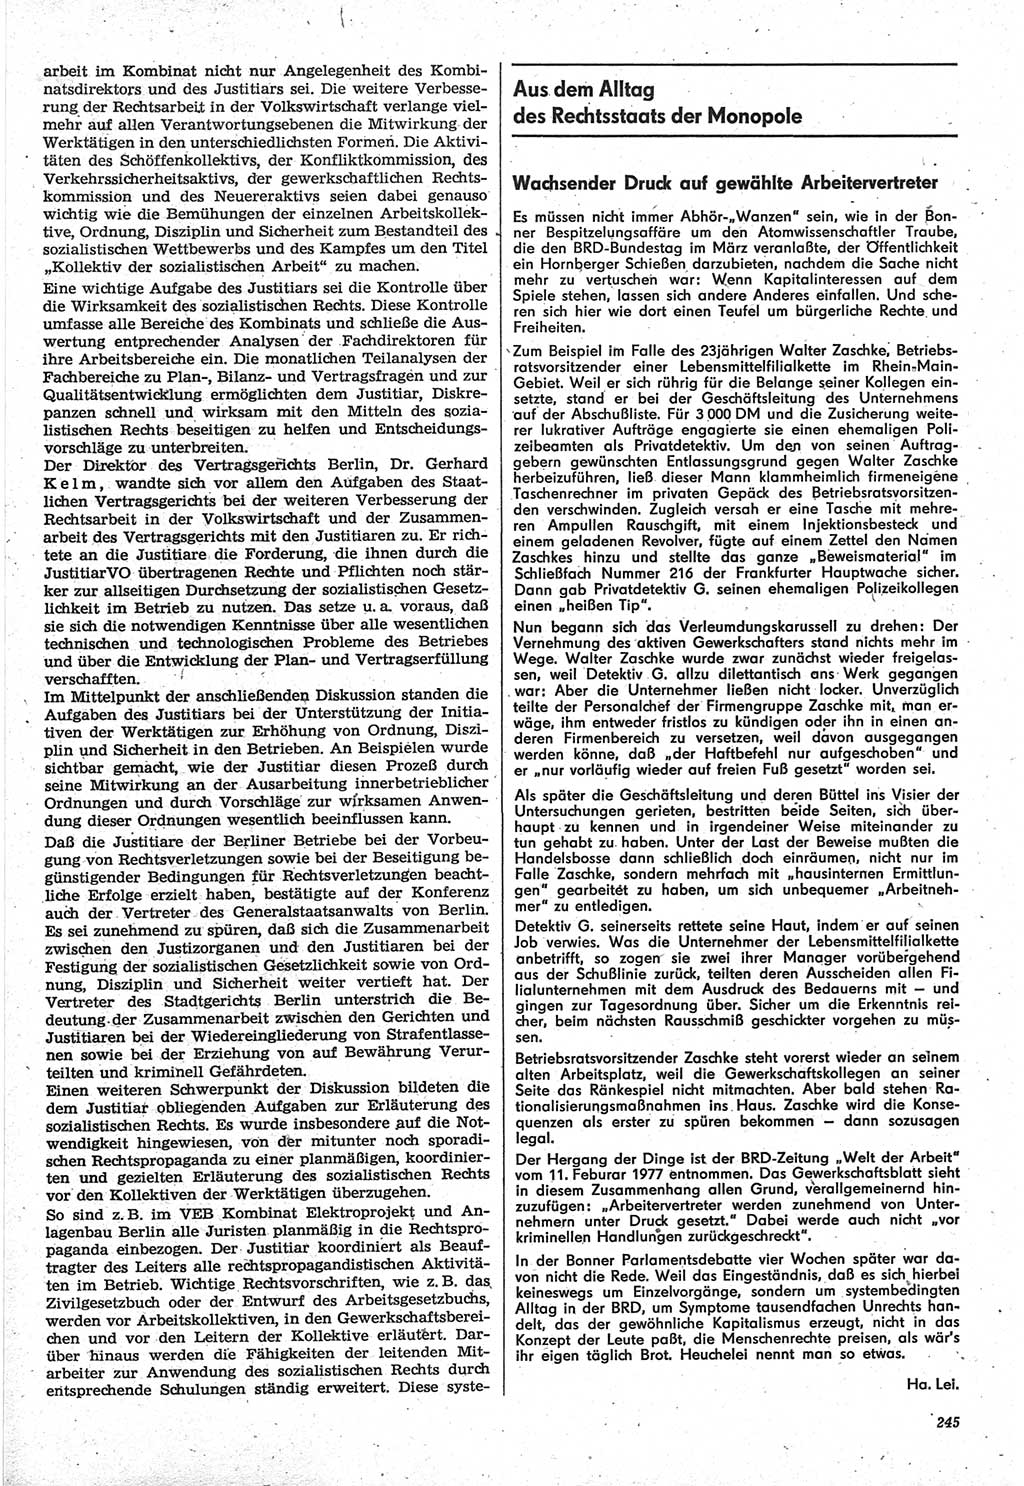 Neue Justiz (NJ), Zeitschrift für Recht und Rechtswissenschaft-Zeitschrift, sozialistisches Recht und Gesetzlichkeit, 31. Jahrgang 1977, Seite 245 (NJ DDR 1977, S. 245)